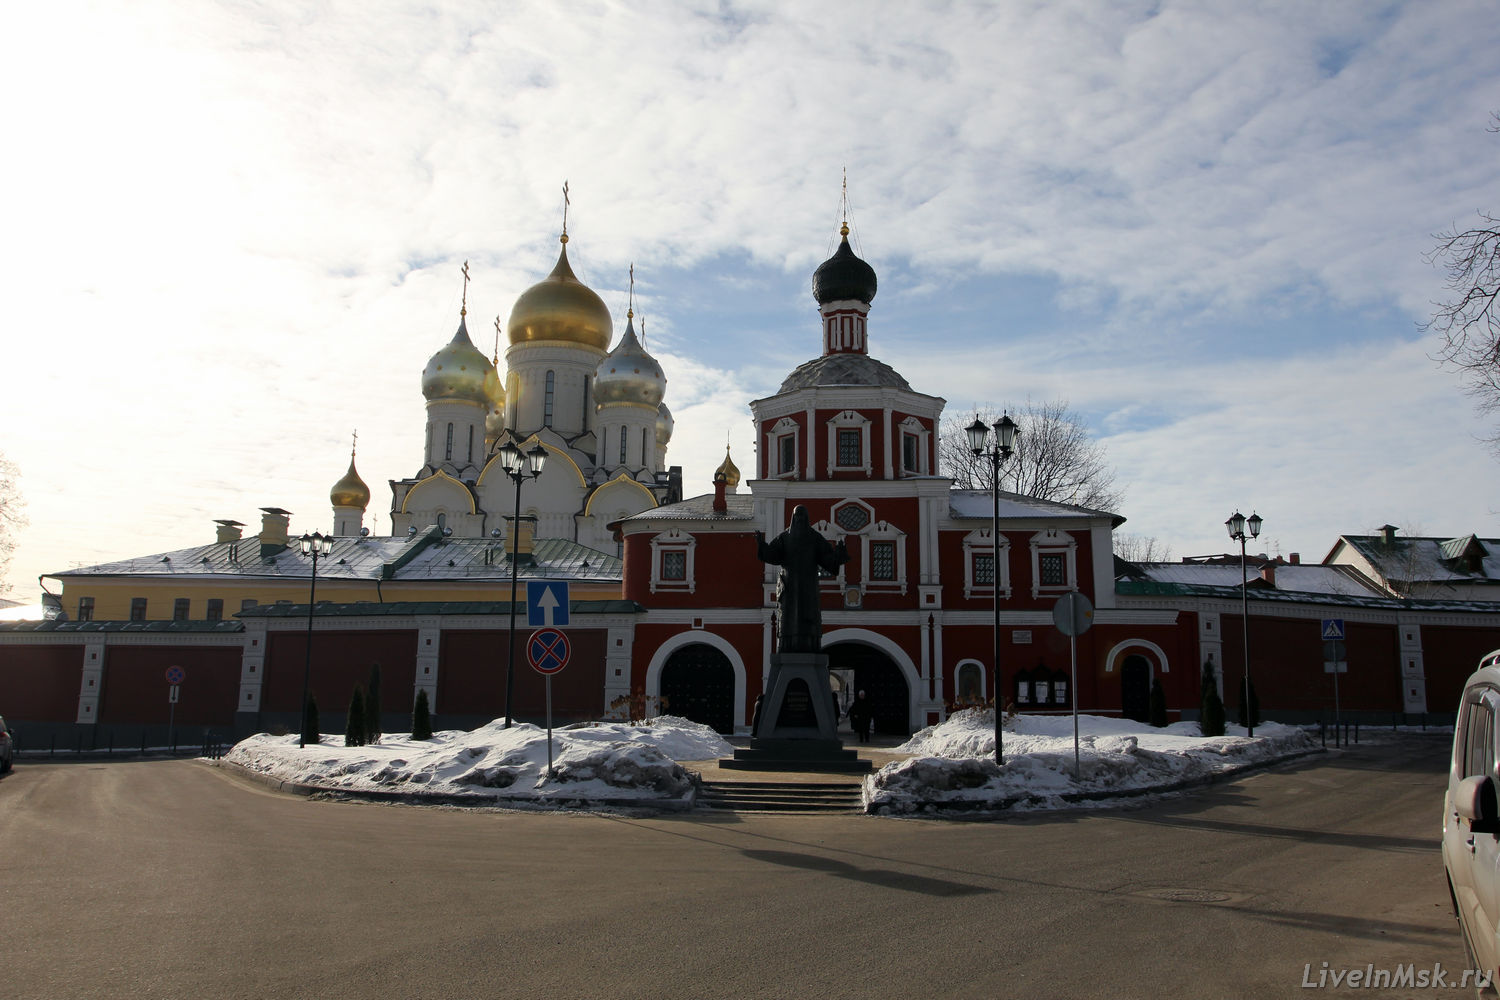 Зачатьевский монастырь, фото 2014 года